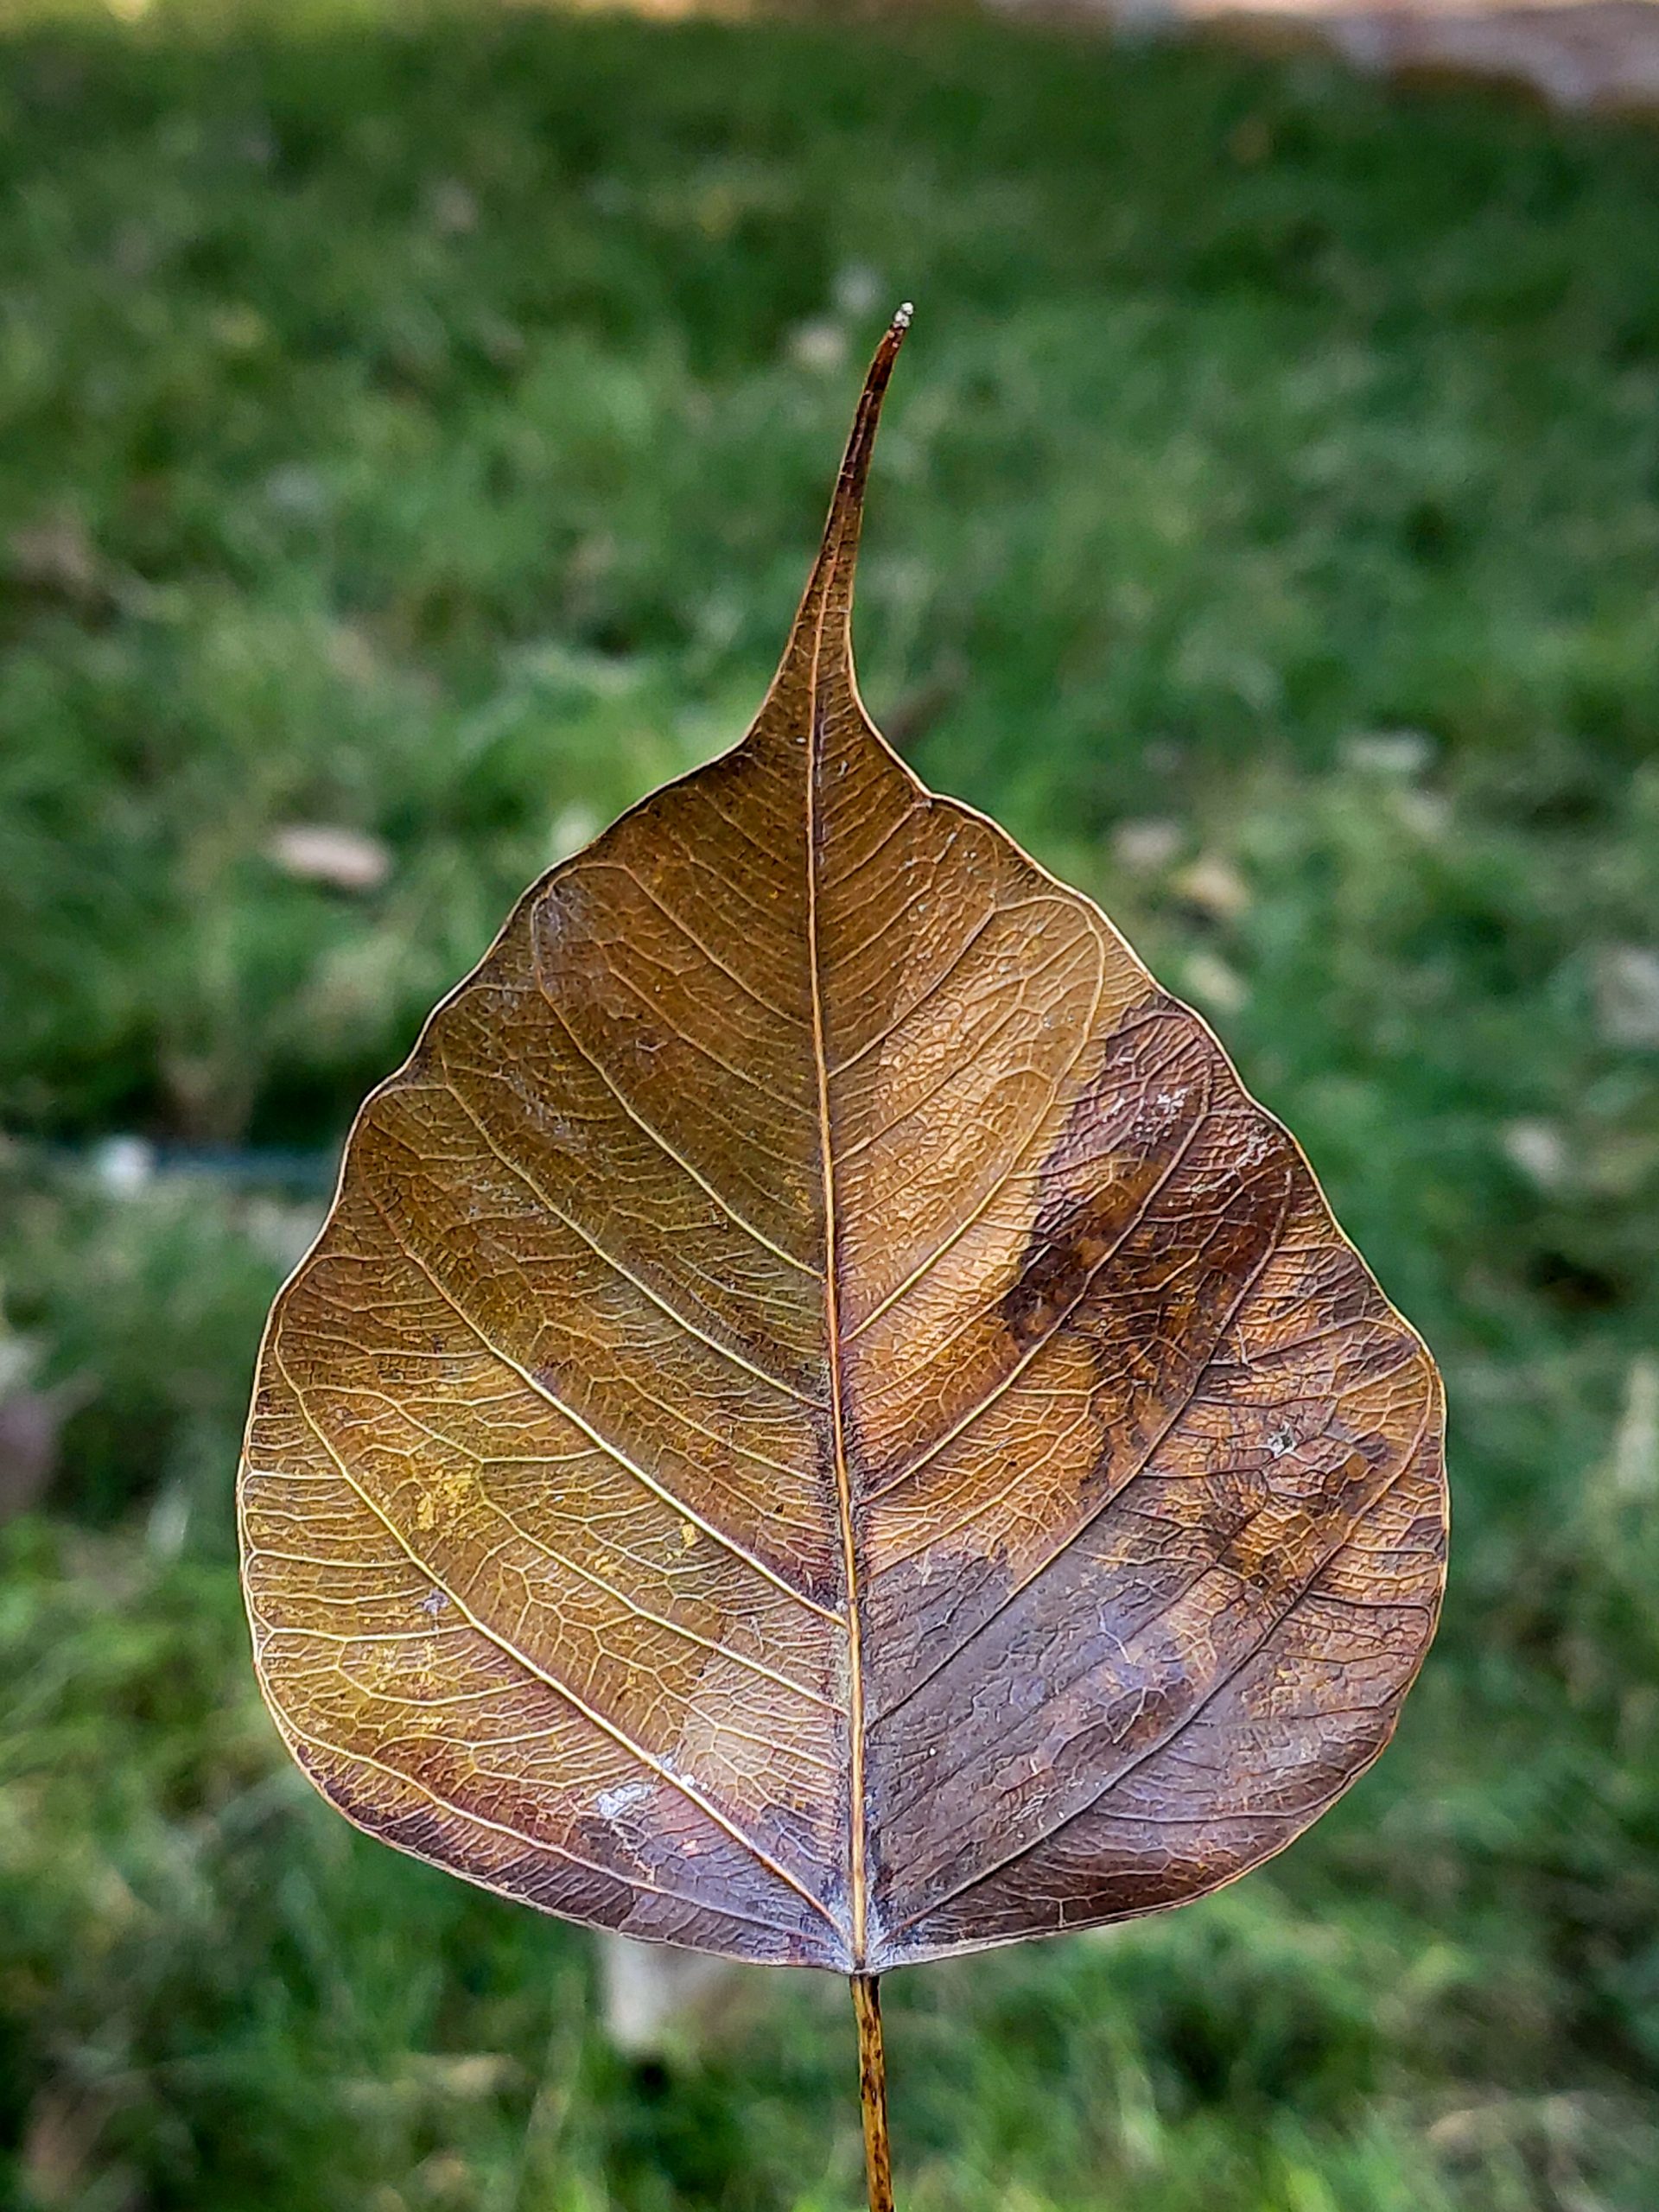 Dry leaf